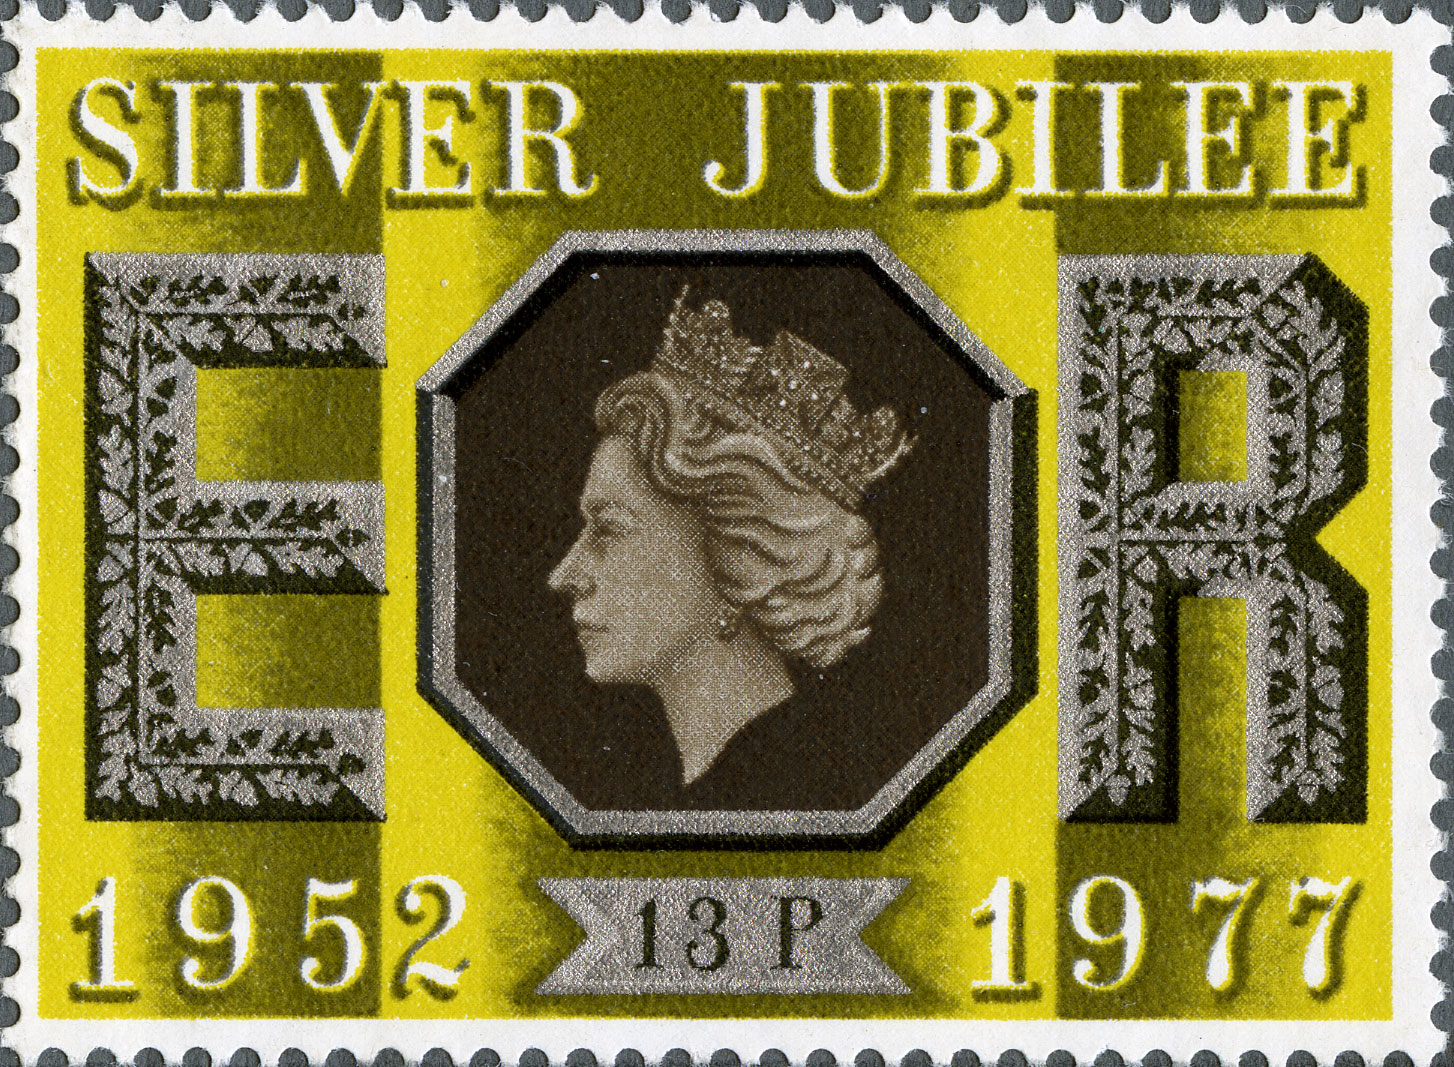 13p, Silver Jubilee